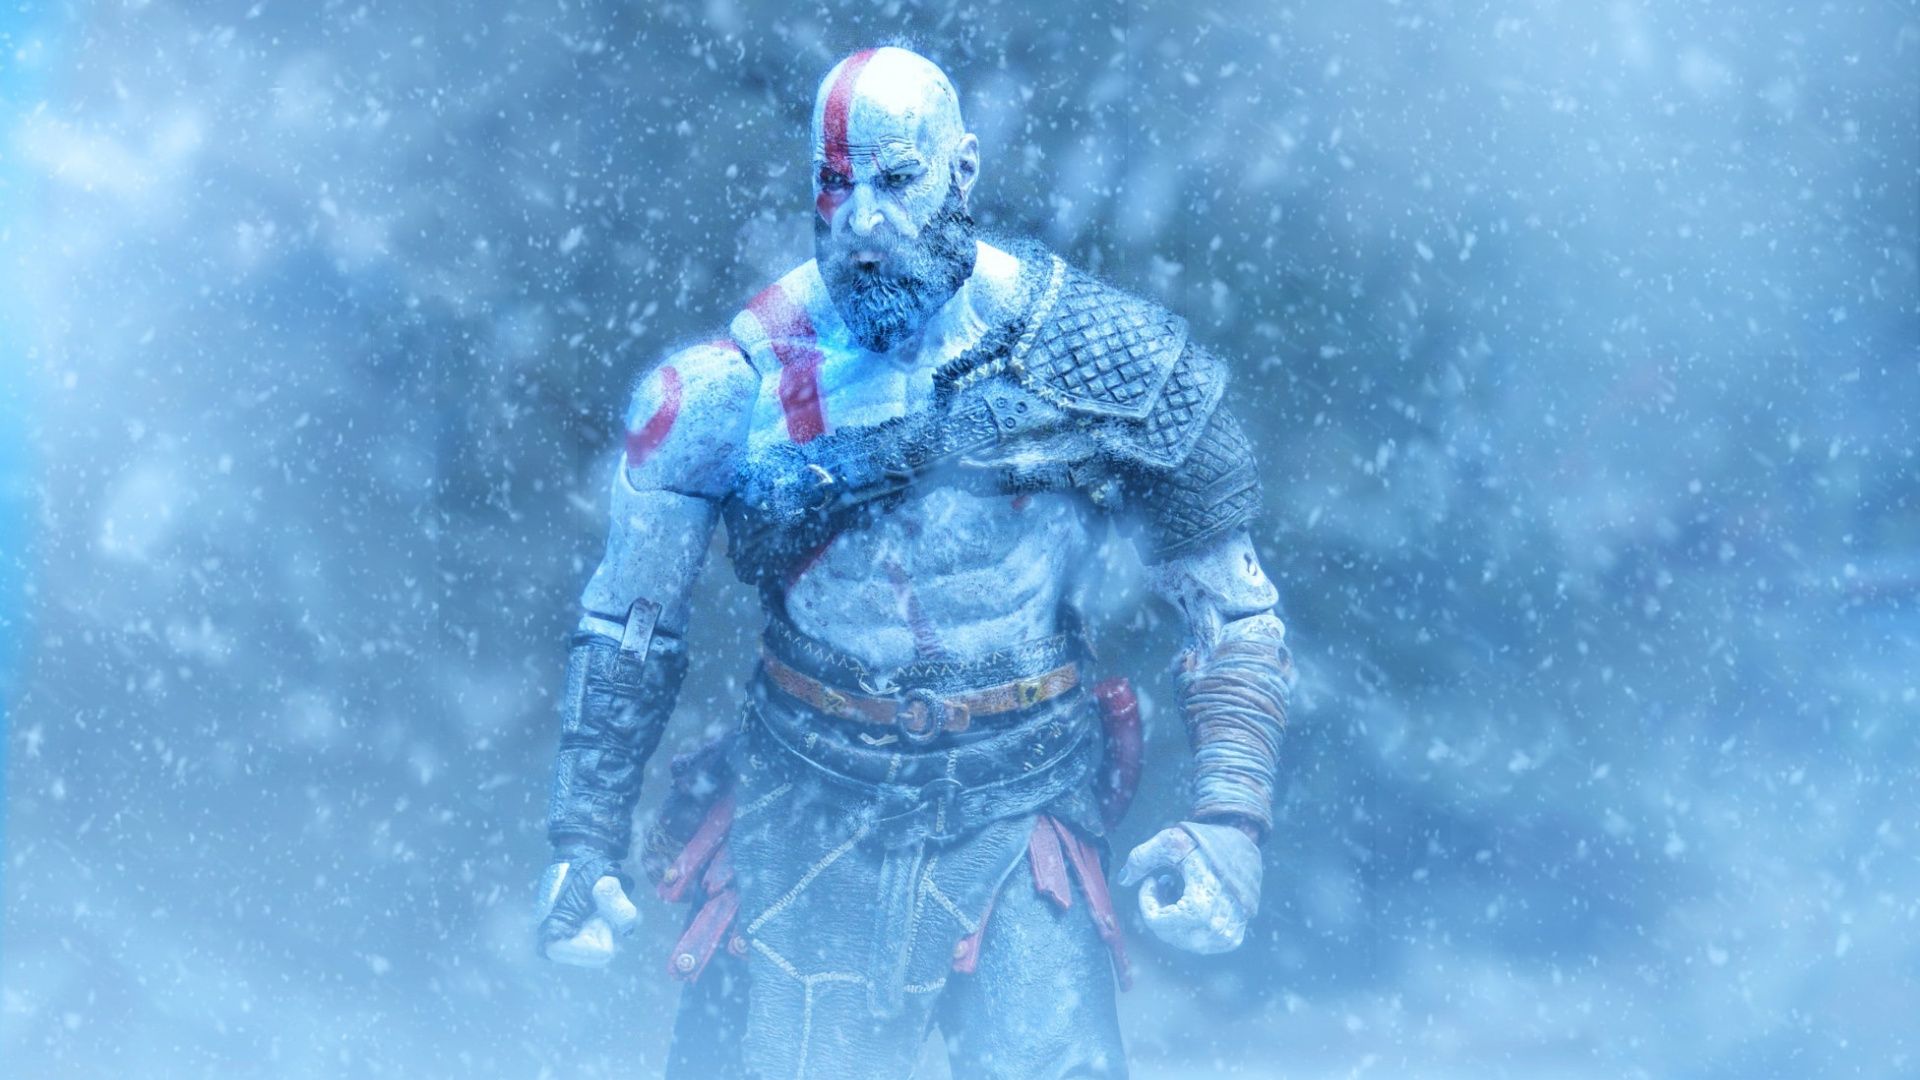 Kratos God Of War Video Game Art Wallpaper Iphone Wallpaper God Of War 4 1920x1080 Wallpaper Teahub Io